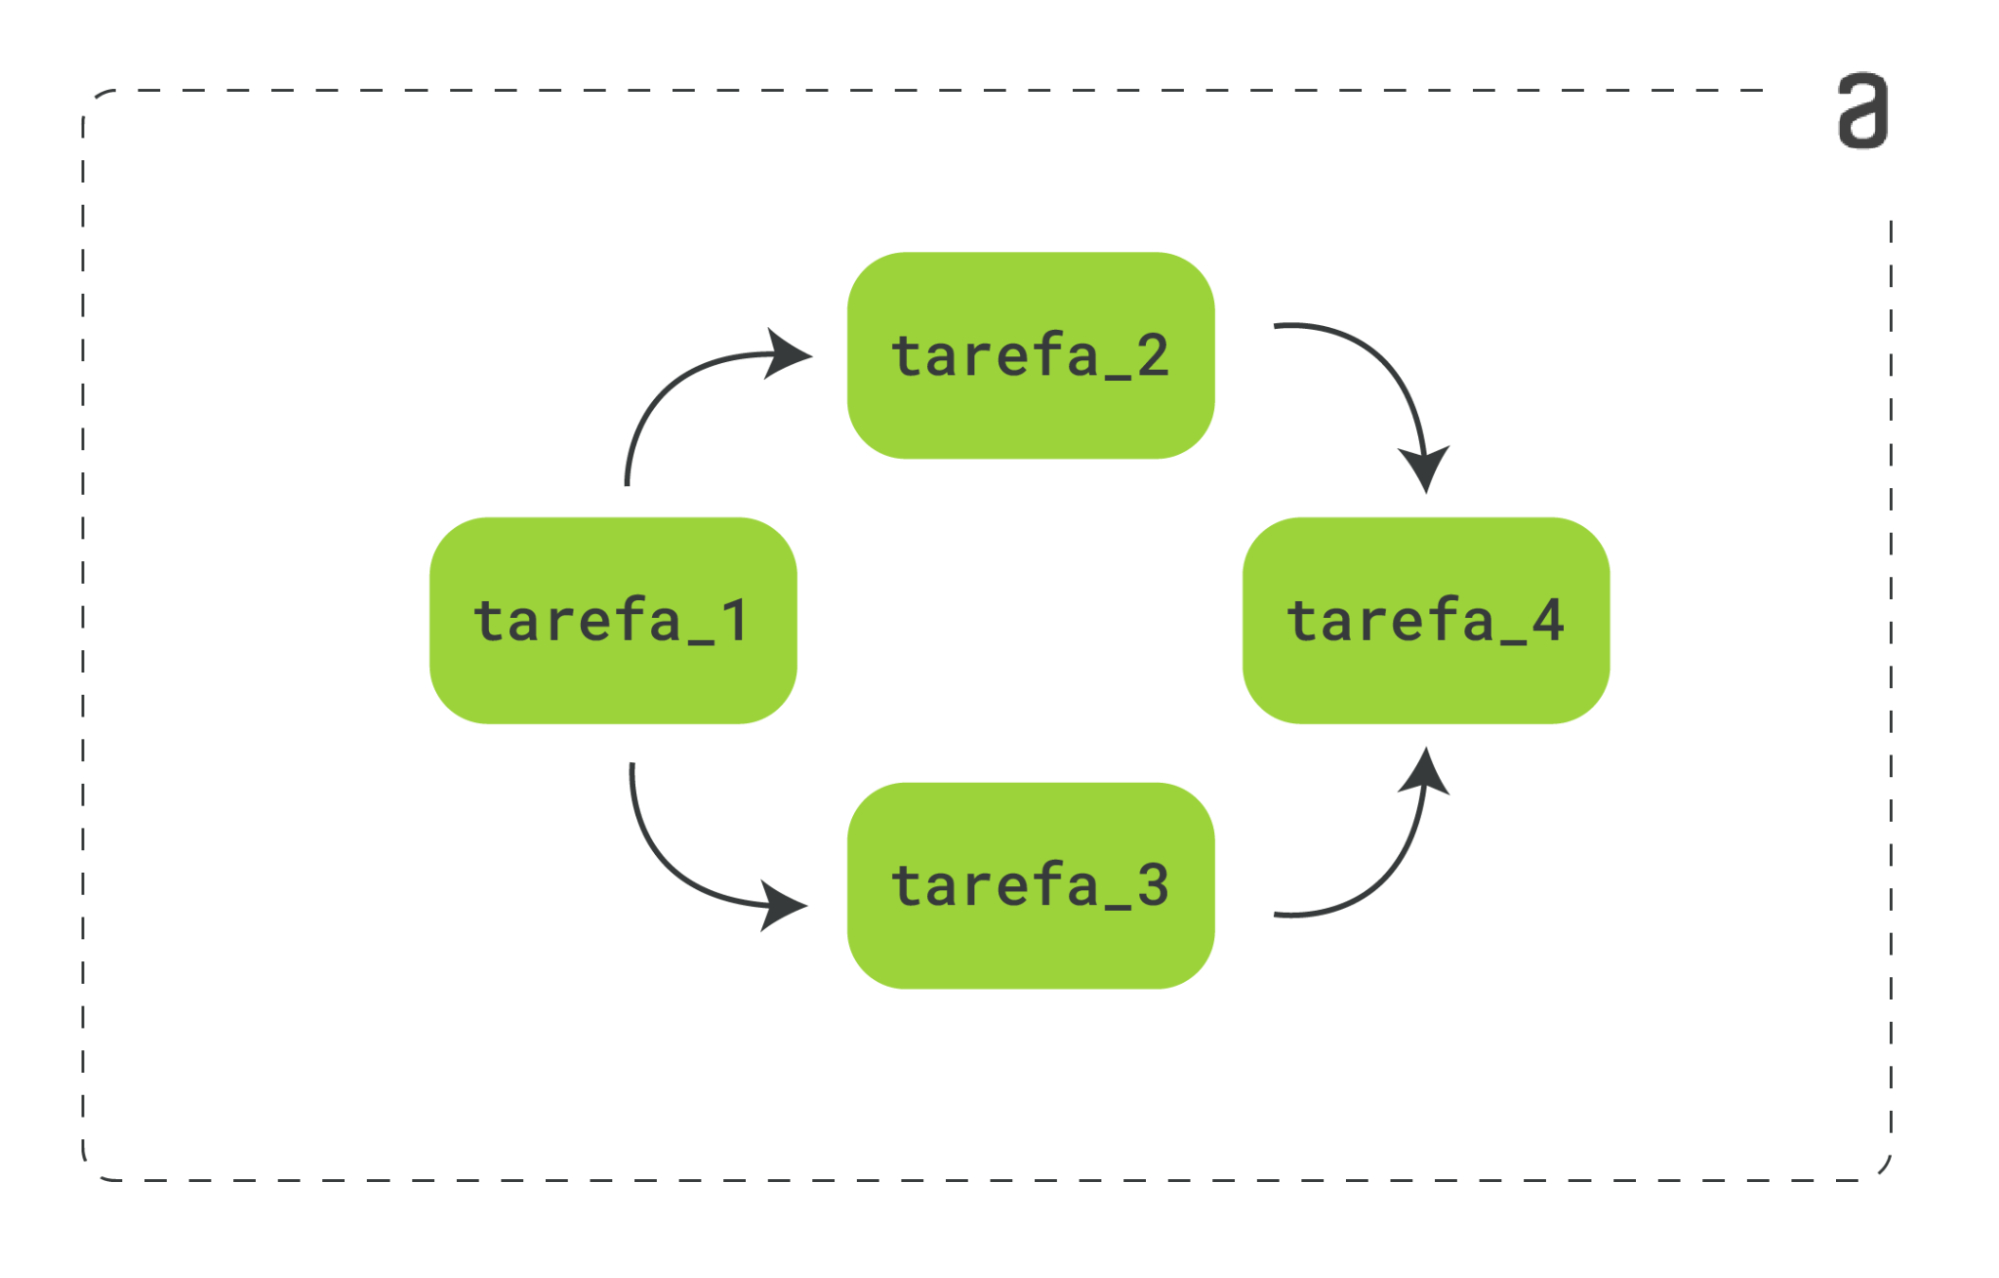 Diagrama do fluxo de tarefas da DAG, contendo quatro tarefas em verde: tarefa_1, tarefa_2, tarefa_3 e tarefa_4. Elas estão dispostas de forma que a tarefa_1 está ligada à tarefa_2 e tarefa_3, que estão em paralelo e, por fim, essas duas estão ligadas na tarefa_4. As ligações ocorrem através de uma seta.